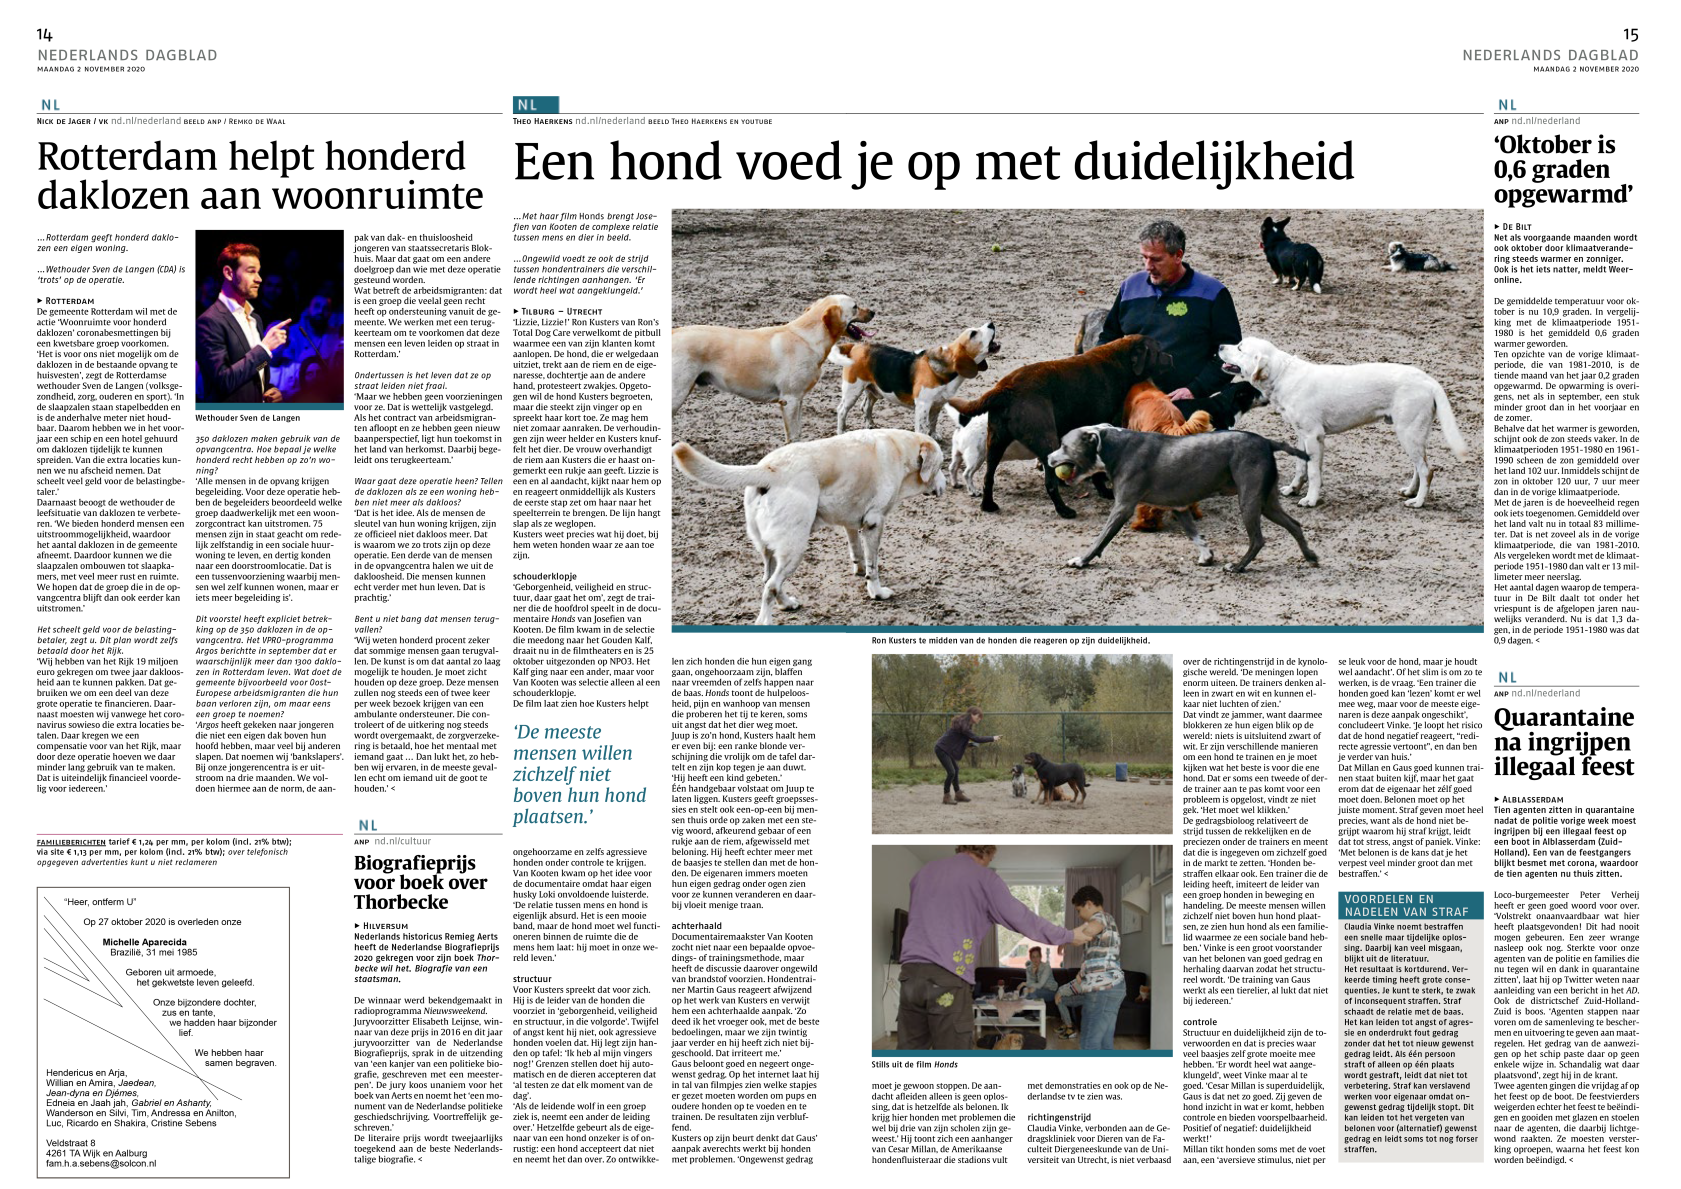 RTDC in Nederlands Dagblad